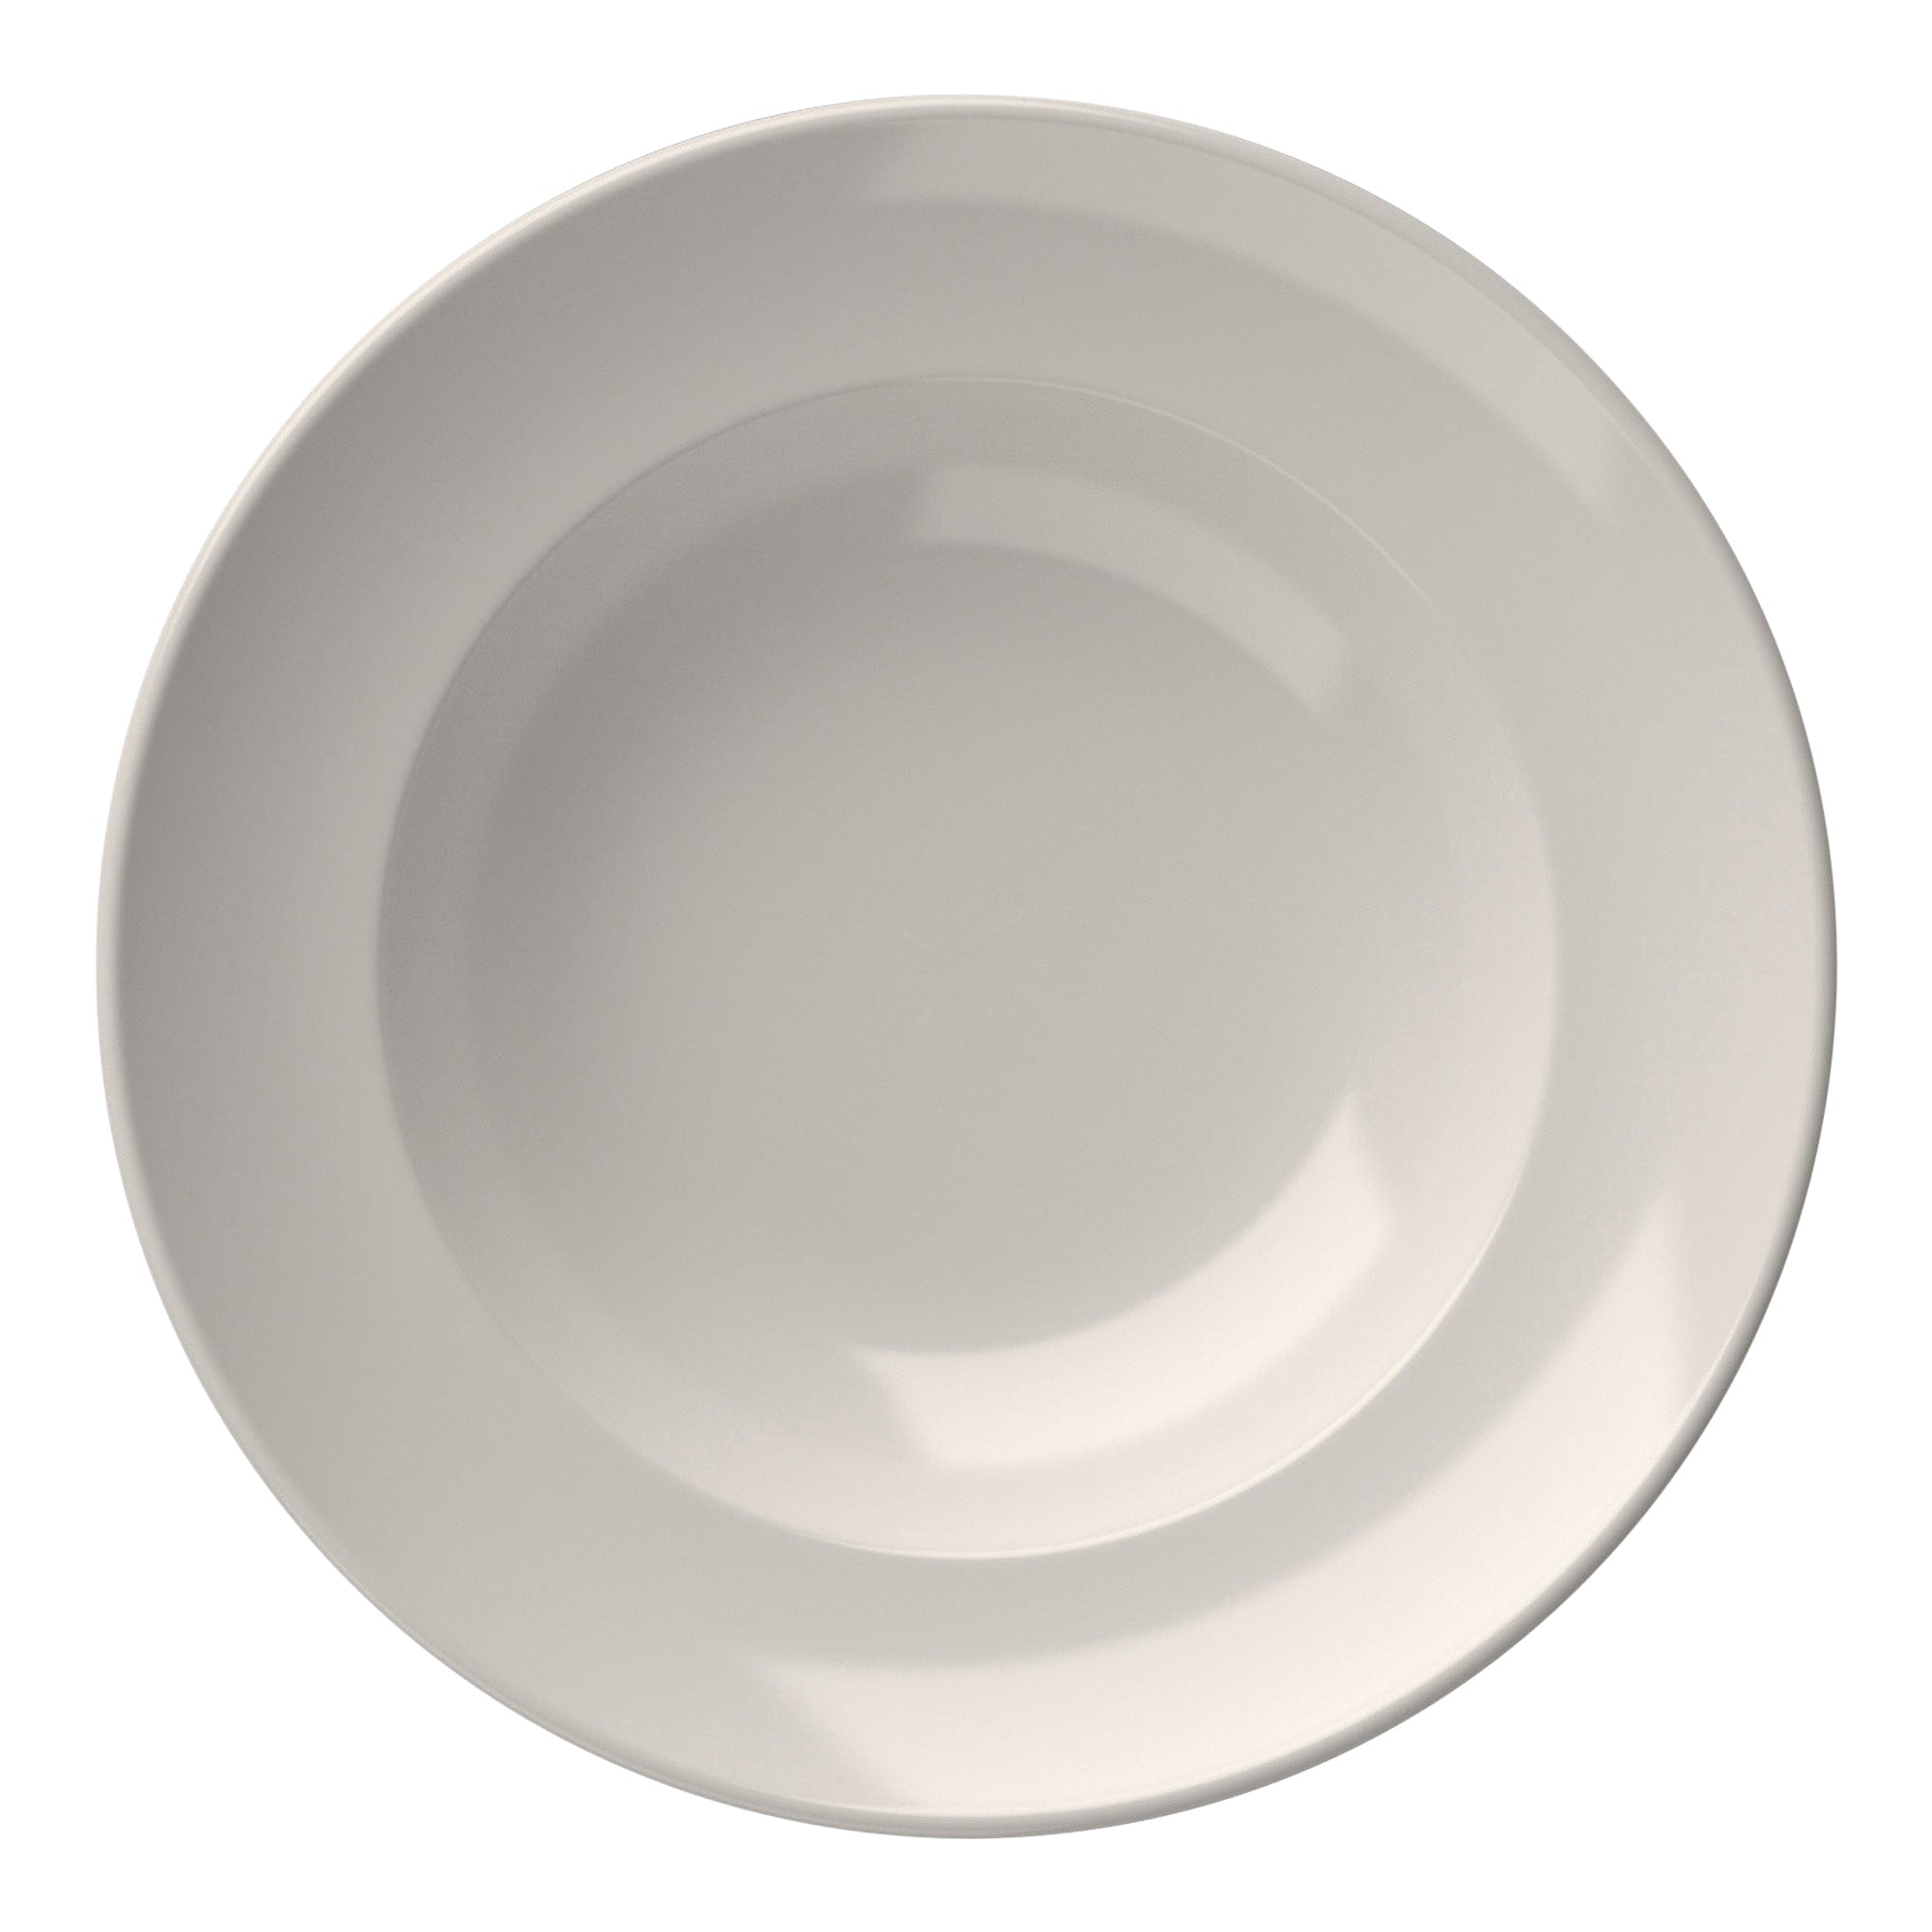 Miro Porcelain Deep Plate 11.1"